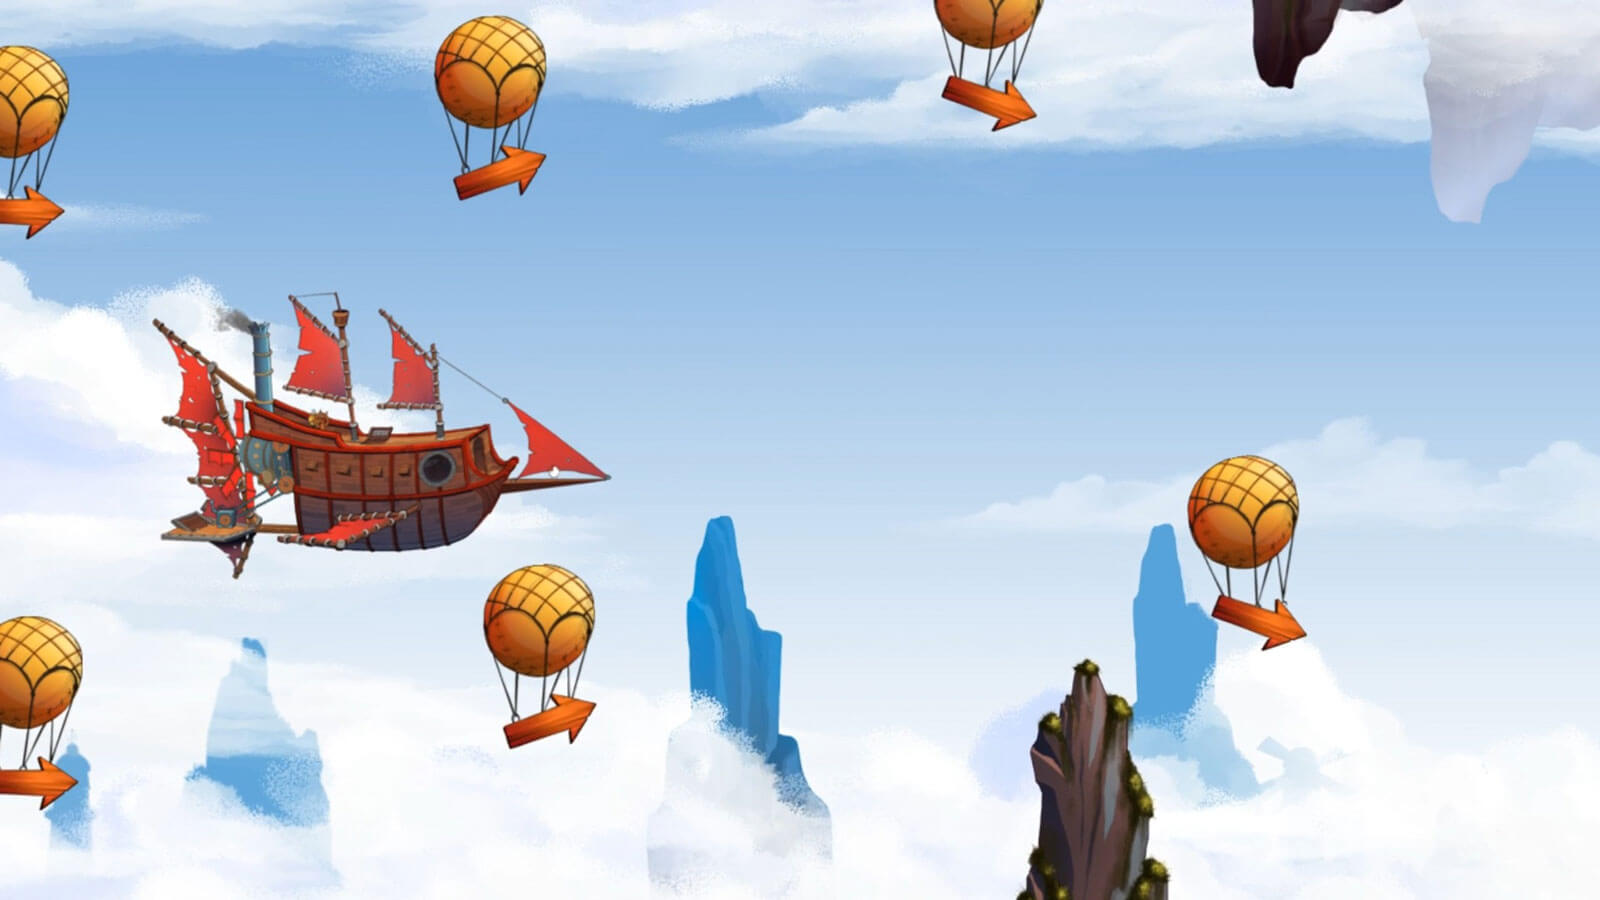 Un barco pirata vuela por el cielo entre globos con flechas apuntando a la derecha